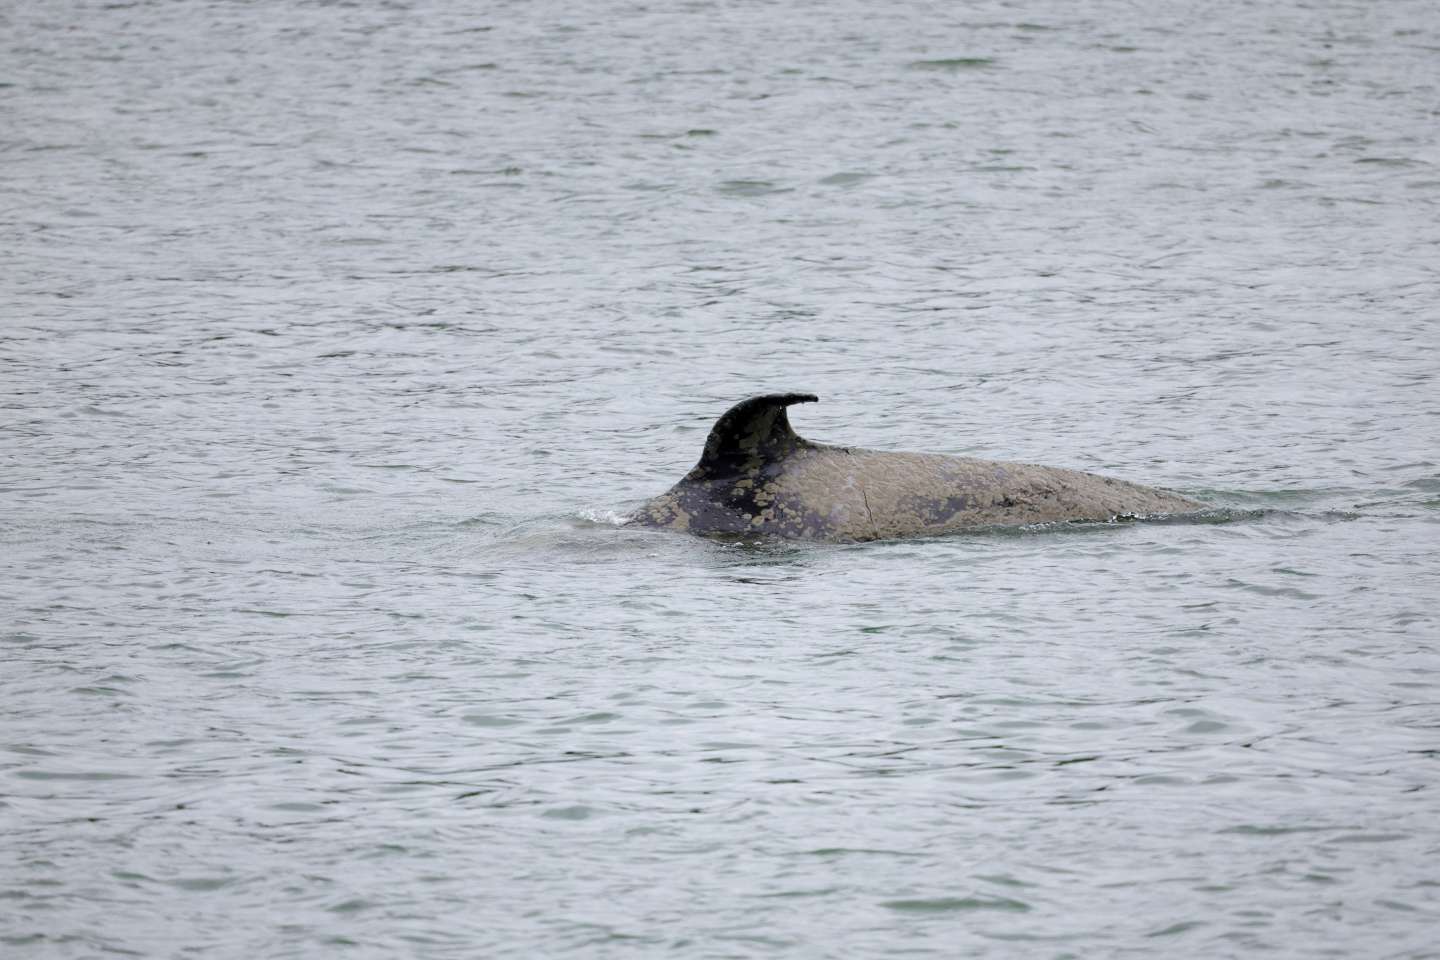 L’orque en difficulté dans la Seine a été retrouvée morte